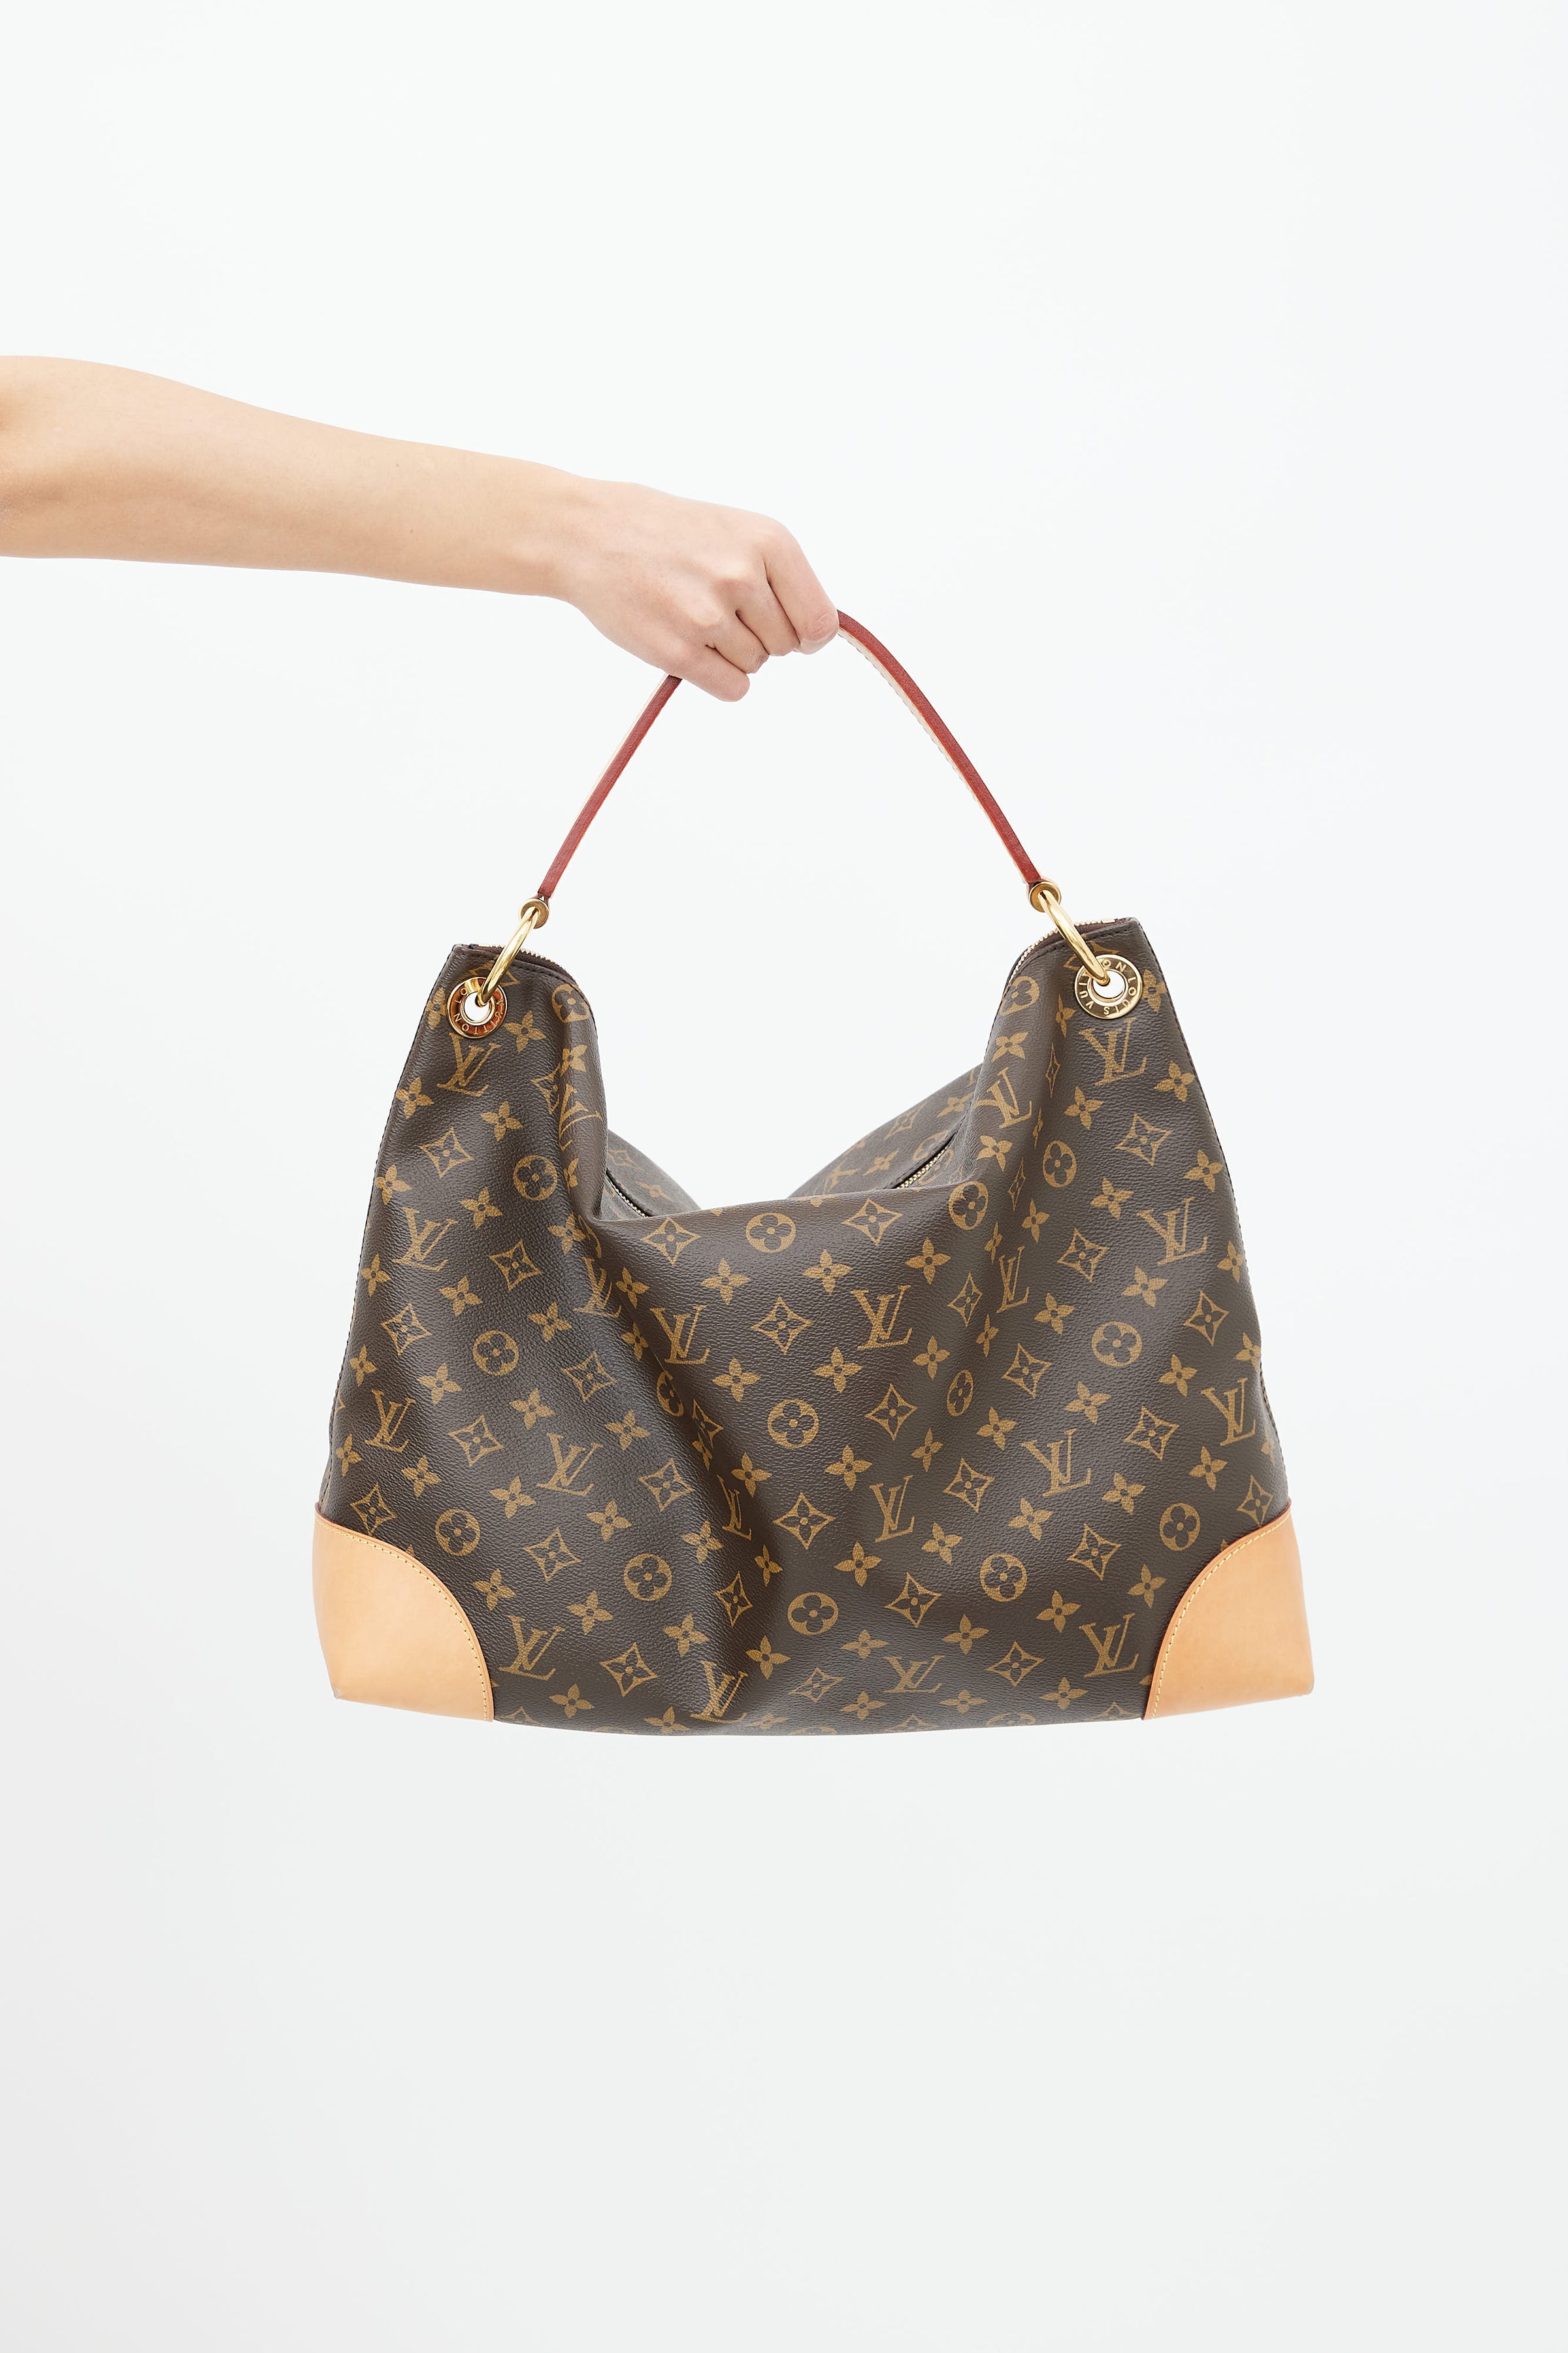 SHOULDER BAG, monogram canvas, Louis Vuitton Berri MM. Vintage Clothing &  Accessories - Auctionet